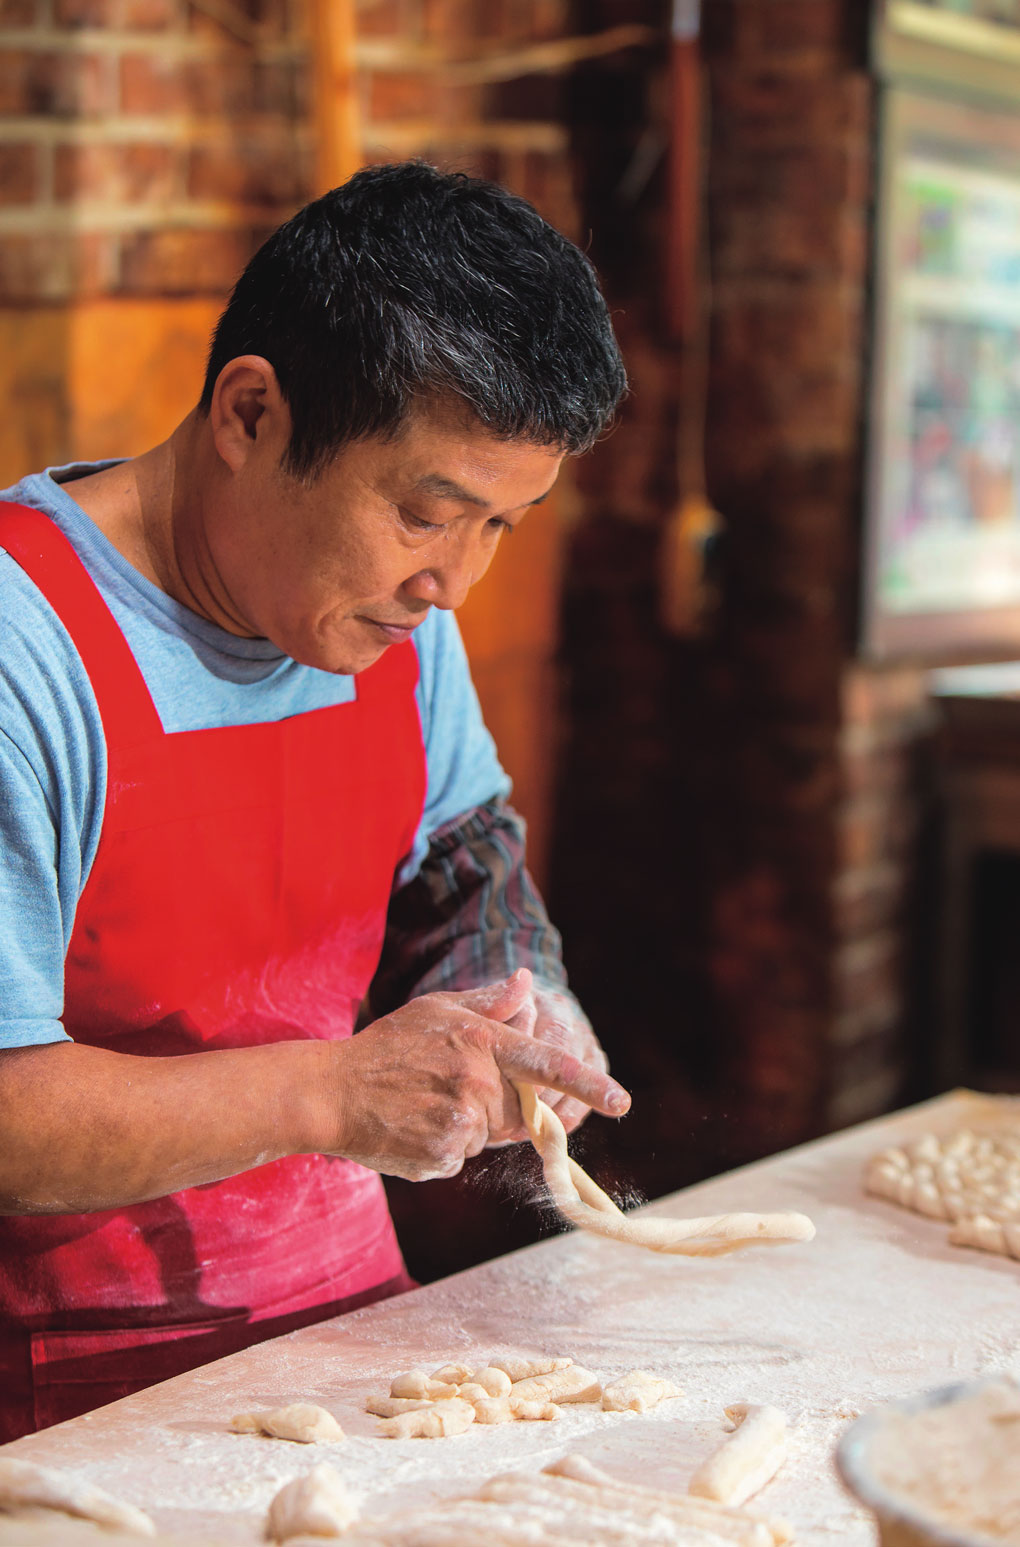 Lim Chun-sik bán kkwabaegi ở chợ Yeongcheon, Seoul đã hơn 40 năm. Ông nhào bột, làm thành từng sợi nhỏ dài và trong chớp mắt hất lên cho chúng xoắn vào nhau thành những chiếc quẩy thừng.